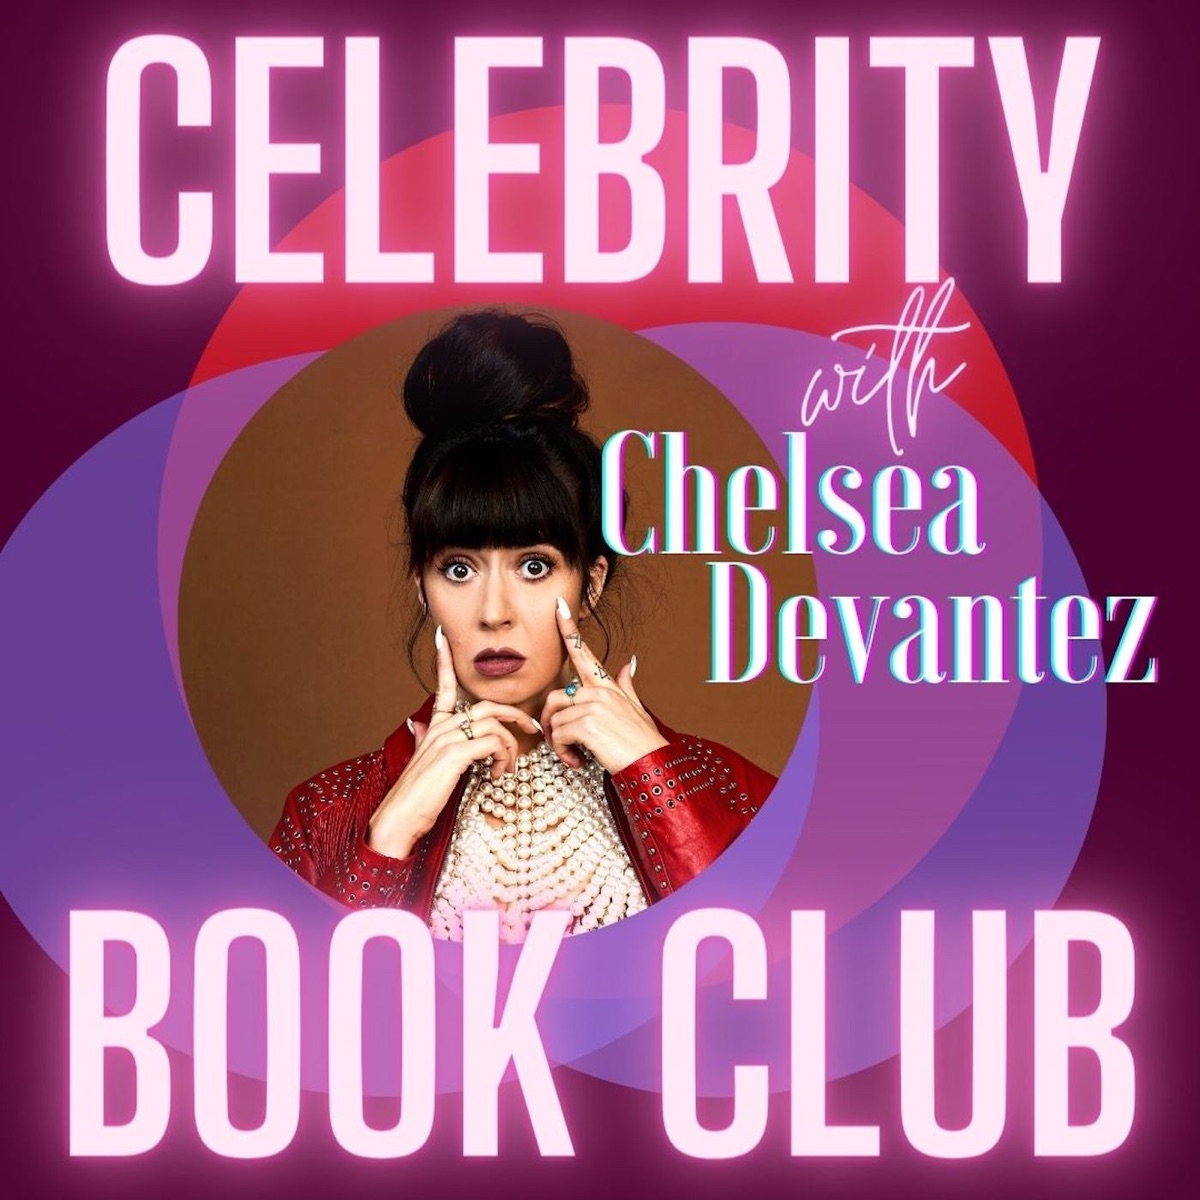 Kristen Bell Blowjob - Celebrity Book Club with Chelsea Devantez â€“ Podcast â€“ Podtail